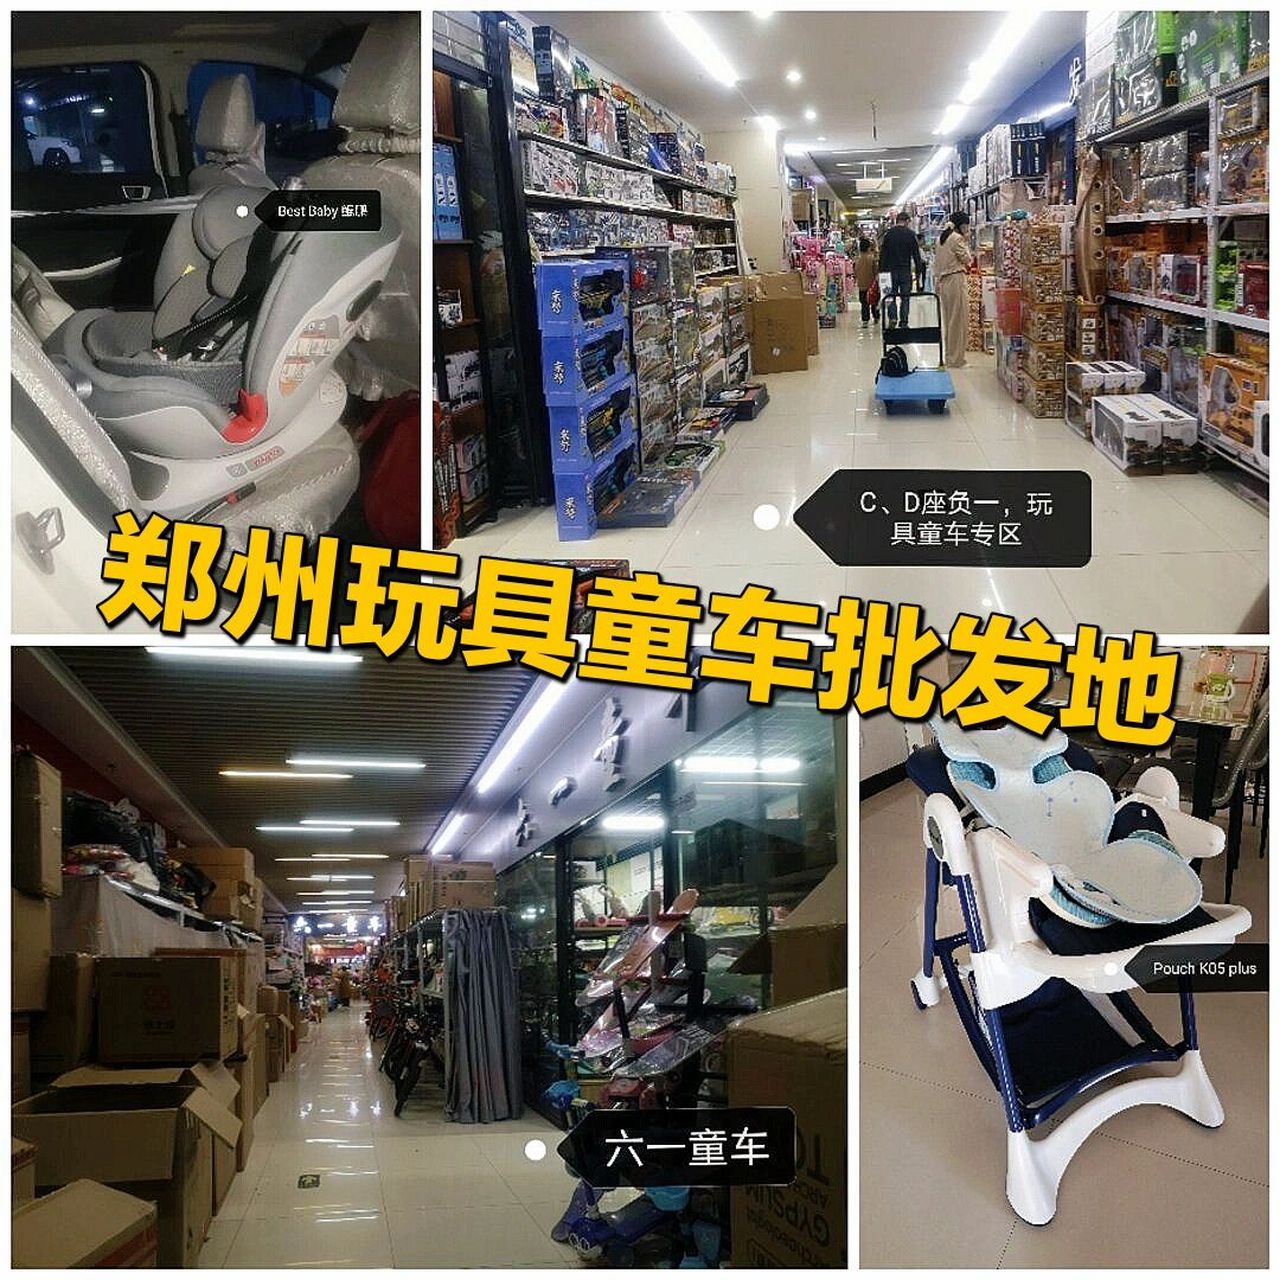 郑州玩具童车批发地～百荣世贸商城 今天给大家推荐一个郑州买玩具